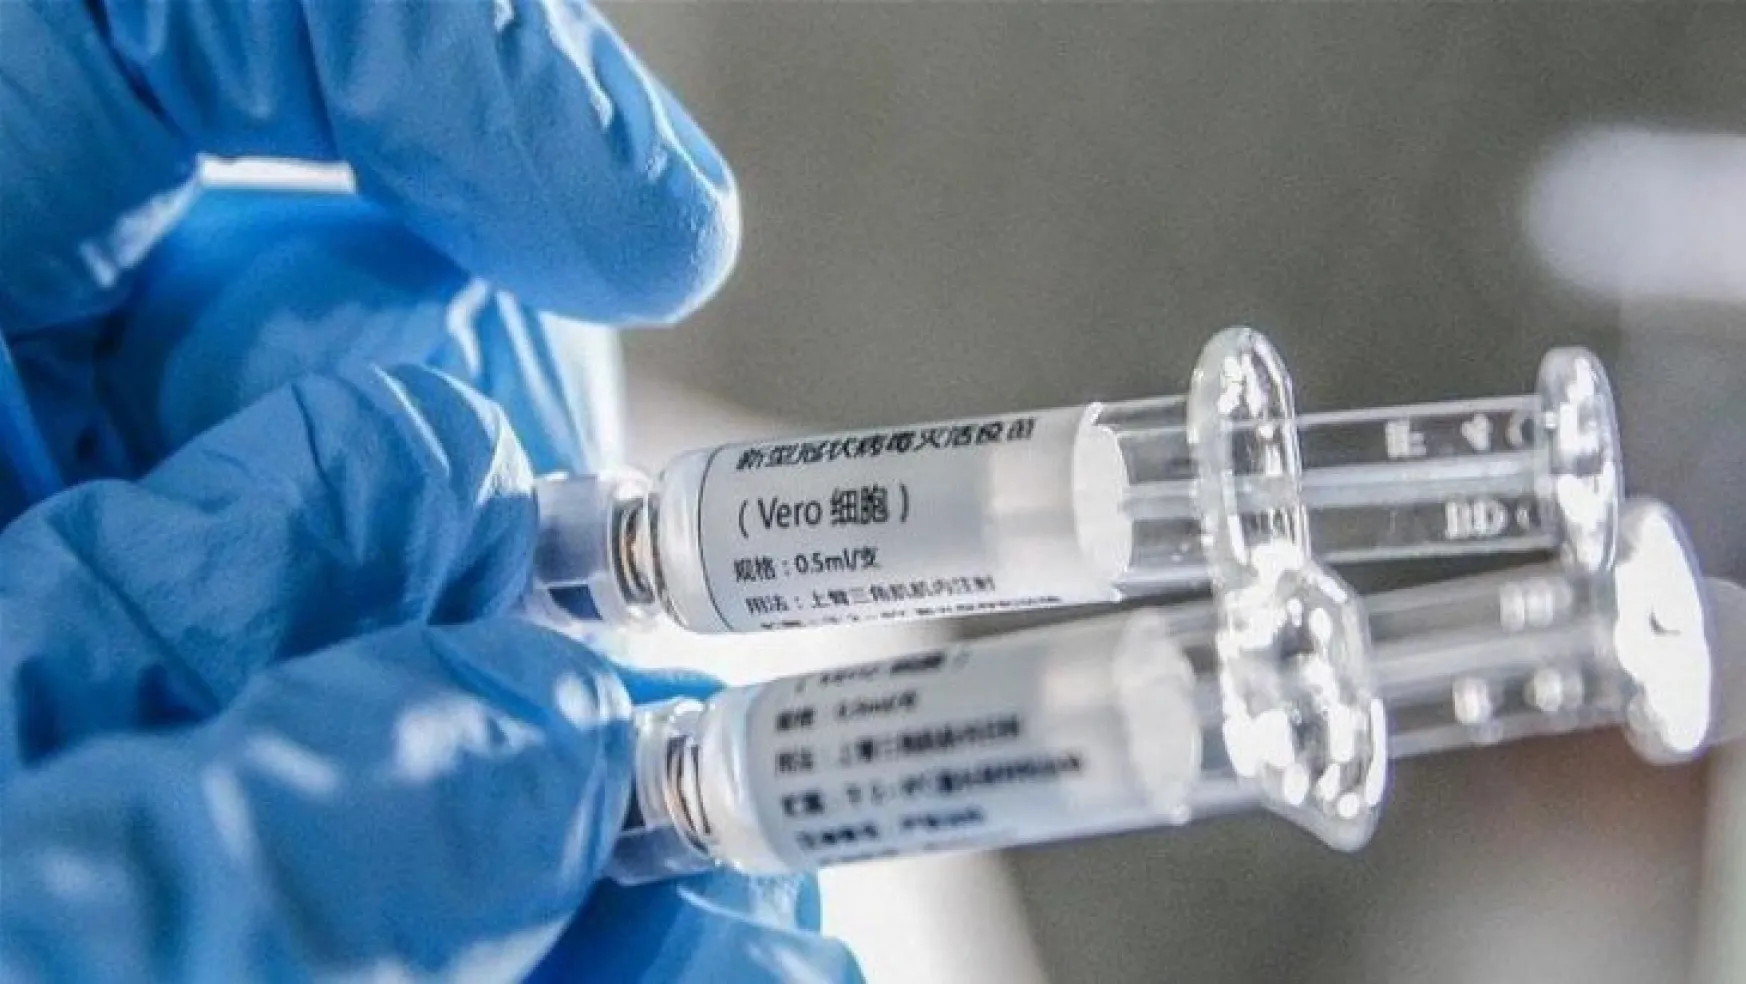  Çin'den flaş corona virüsü aşısı açıklaması: İlk fotoğraflar geldi